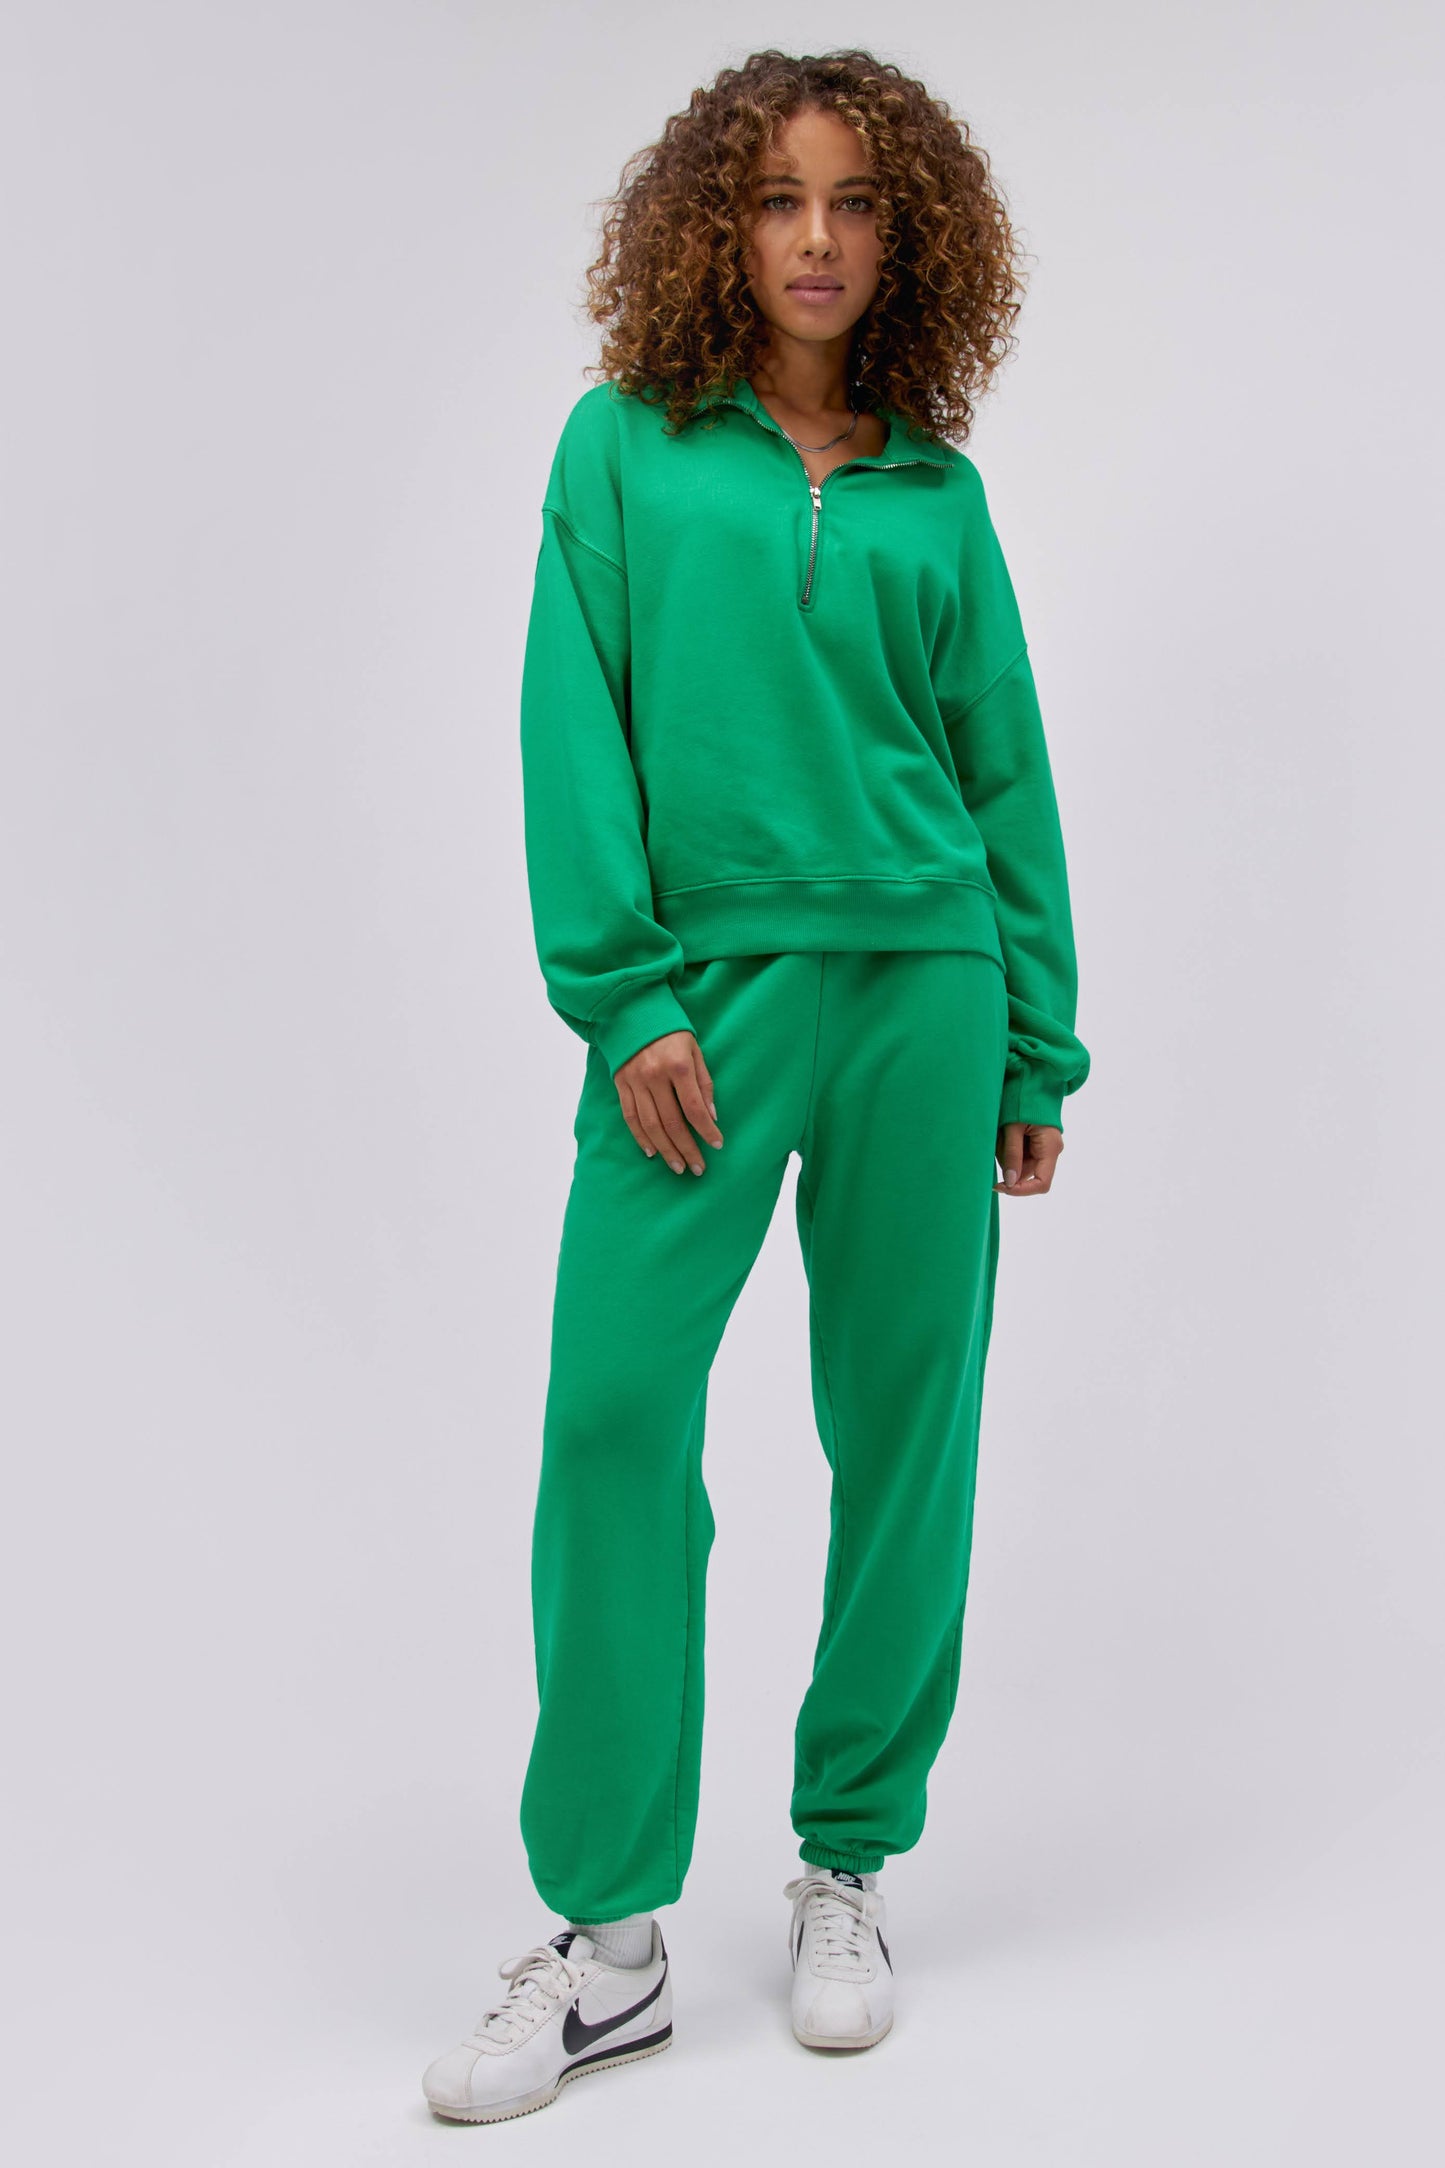 Model wearing a boyfriend sweatpant in lucky green.